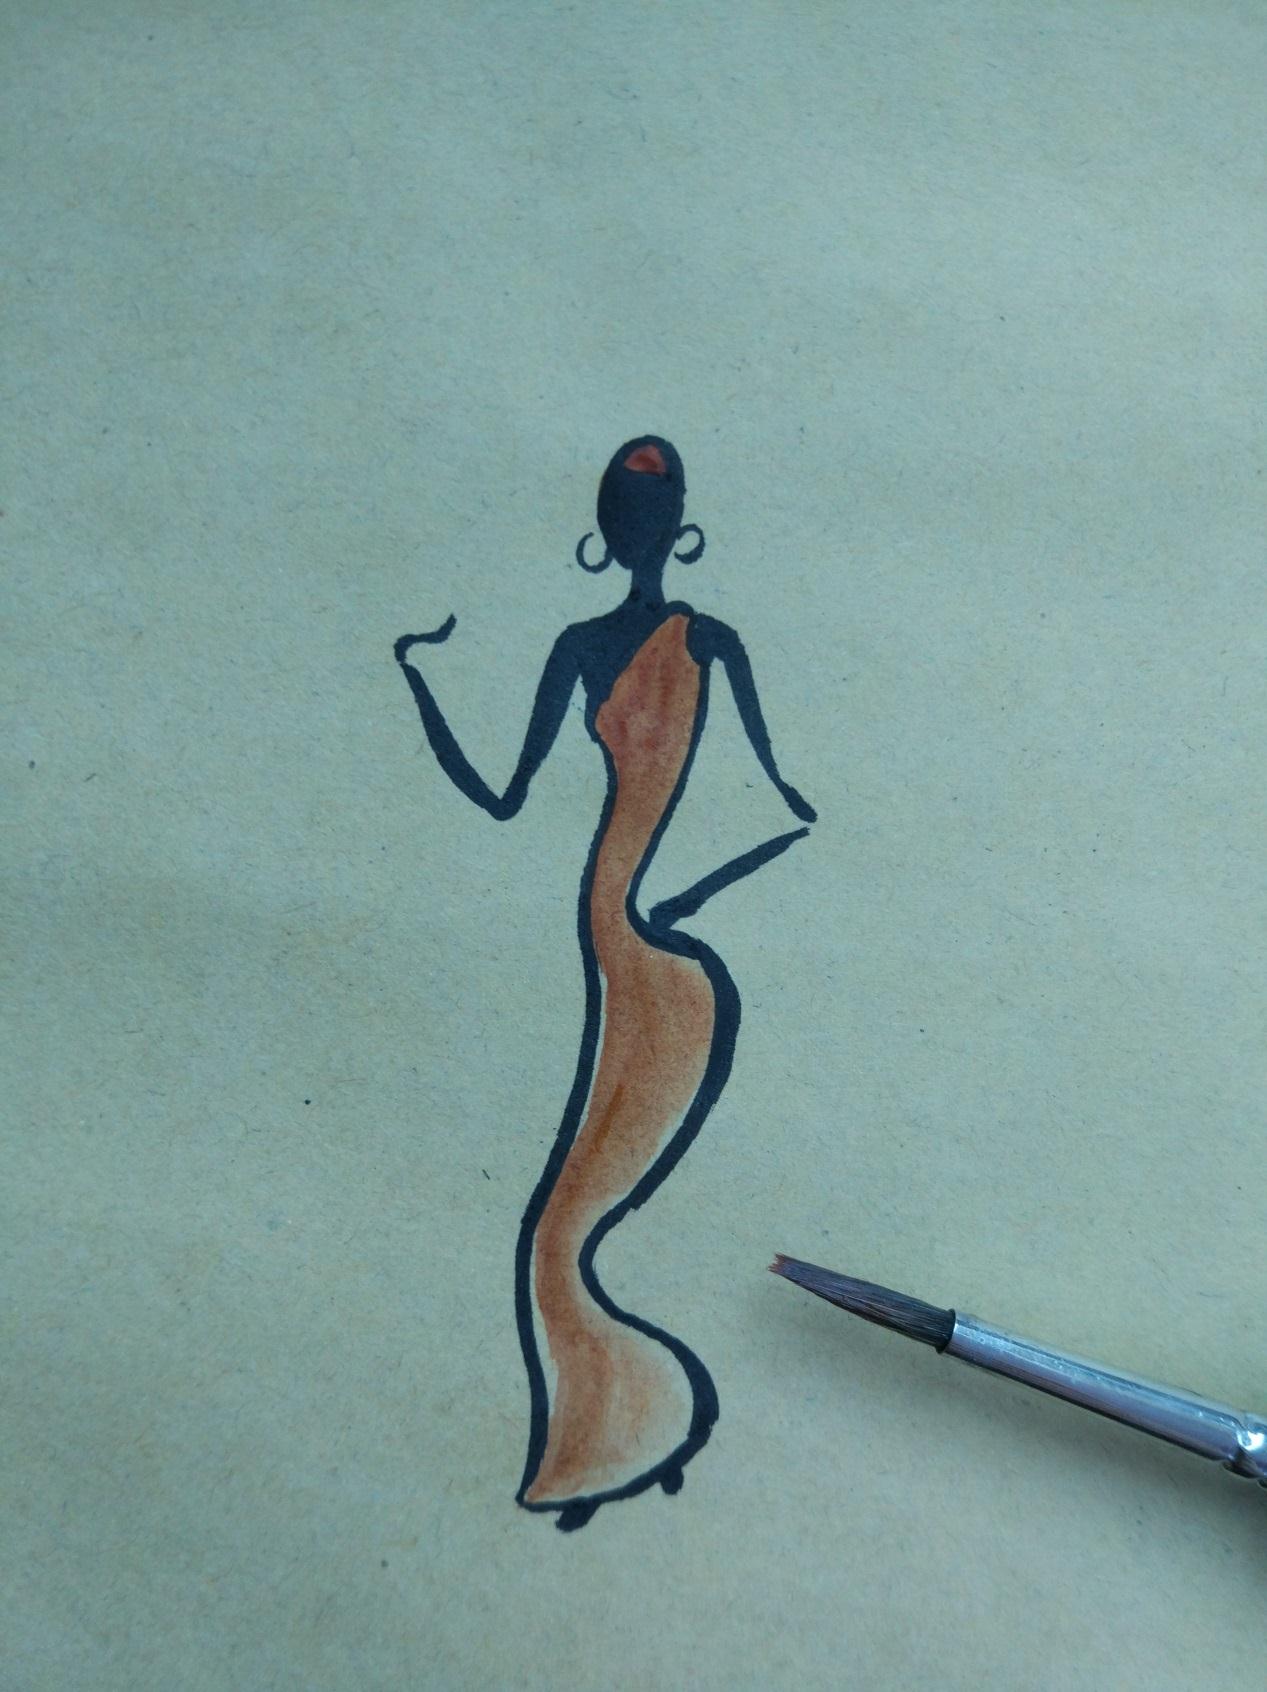 人物彩绘作品之装饰线条-女人创意DIY手绘插画